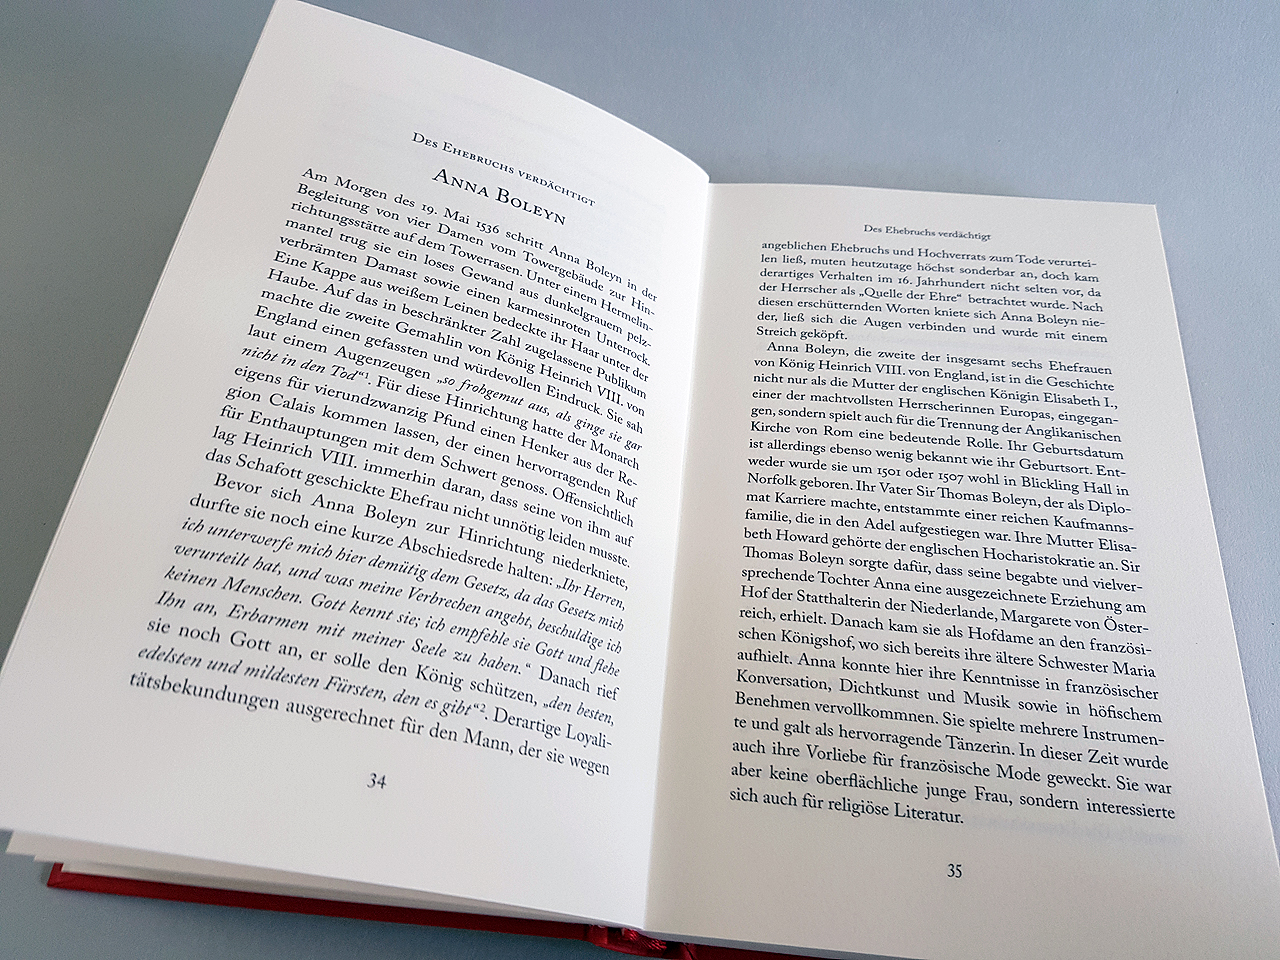 Doppelseite des Sachbuchs ‚Legendäre Frauen. Zwischen Triumph und Verhängnis‘ von Barbara Beck. Aufgeschlagen sind die ersten Seiten des Kapitels zu Anna Boleyn. Unter den Seiten ist der rote Umschlag der Hardcover Bindung zu erkennen.